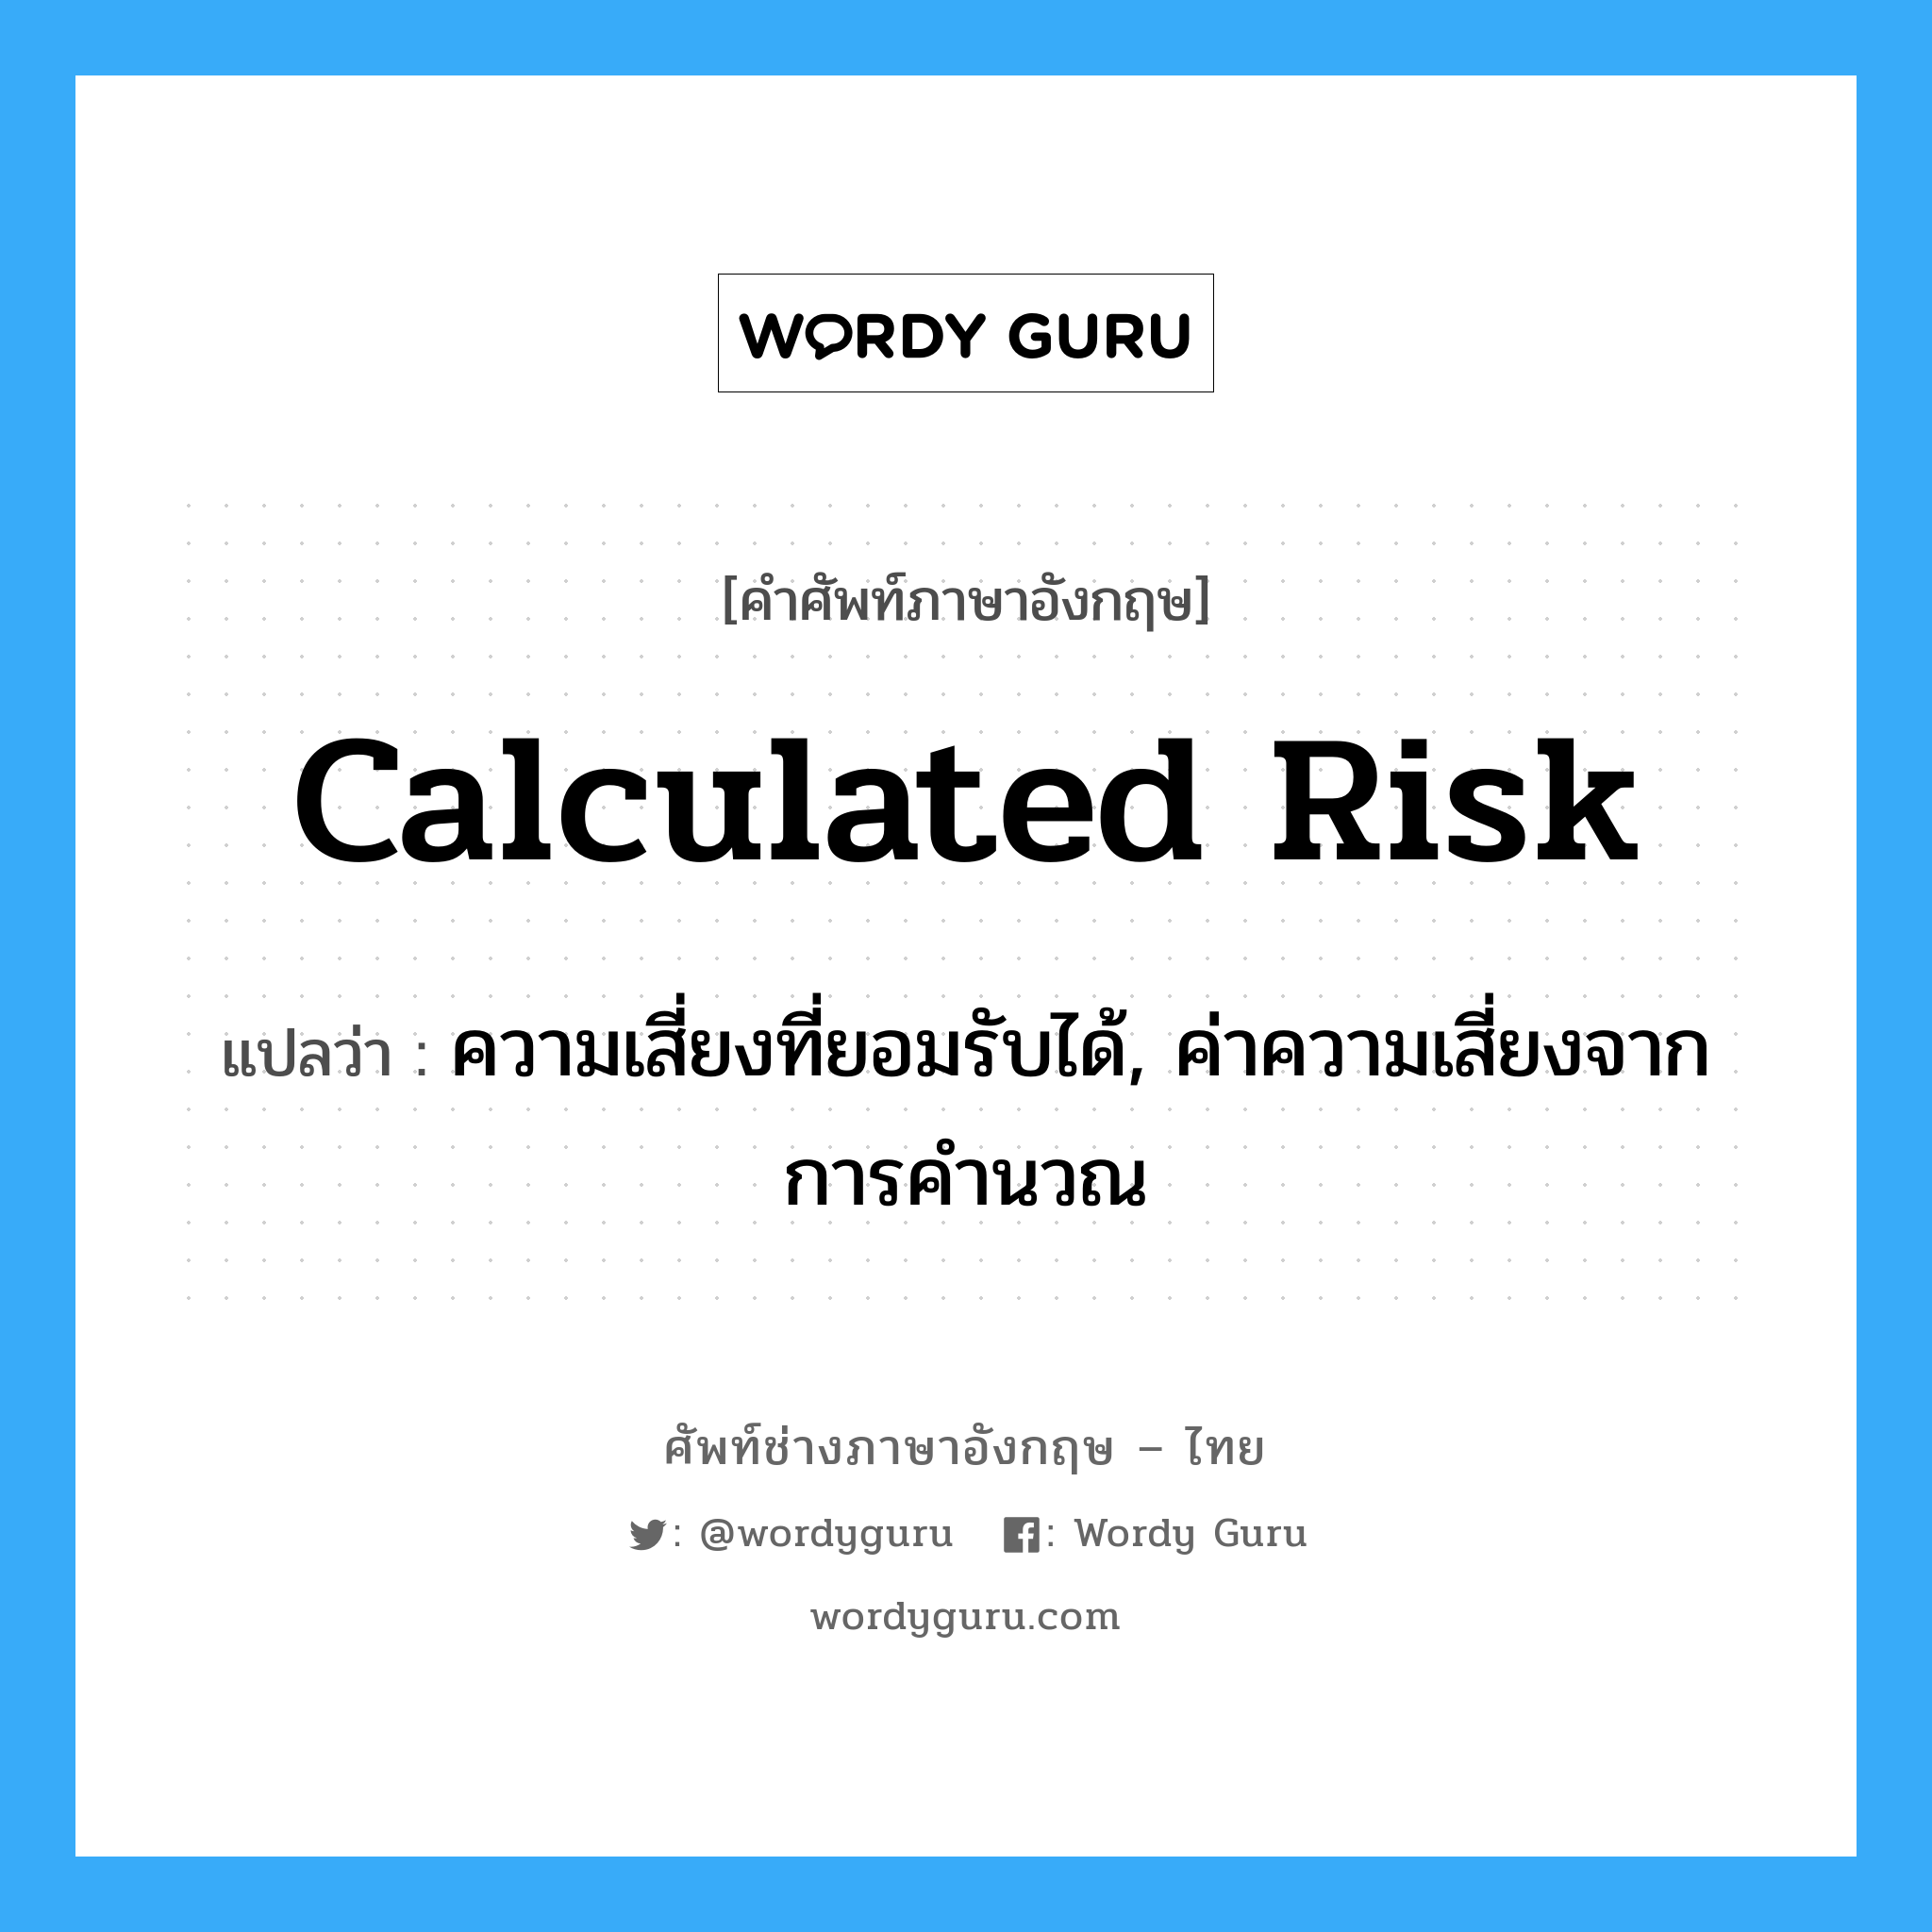 Calculated Risk แปลว่า?, คำศัพท์ช่างภาษาอังกฤษ - ไทย Calculated Risk คำศัพท์ภาษาอังกฤษ Calculated Risk แปลว่า ความเสี่ยงที่ยอมรับได้, ค่าความเสี่ยงจากการคำนวณ